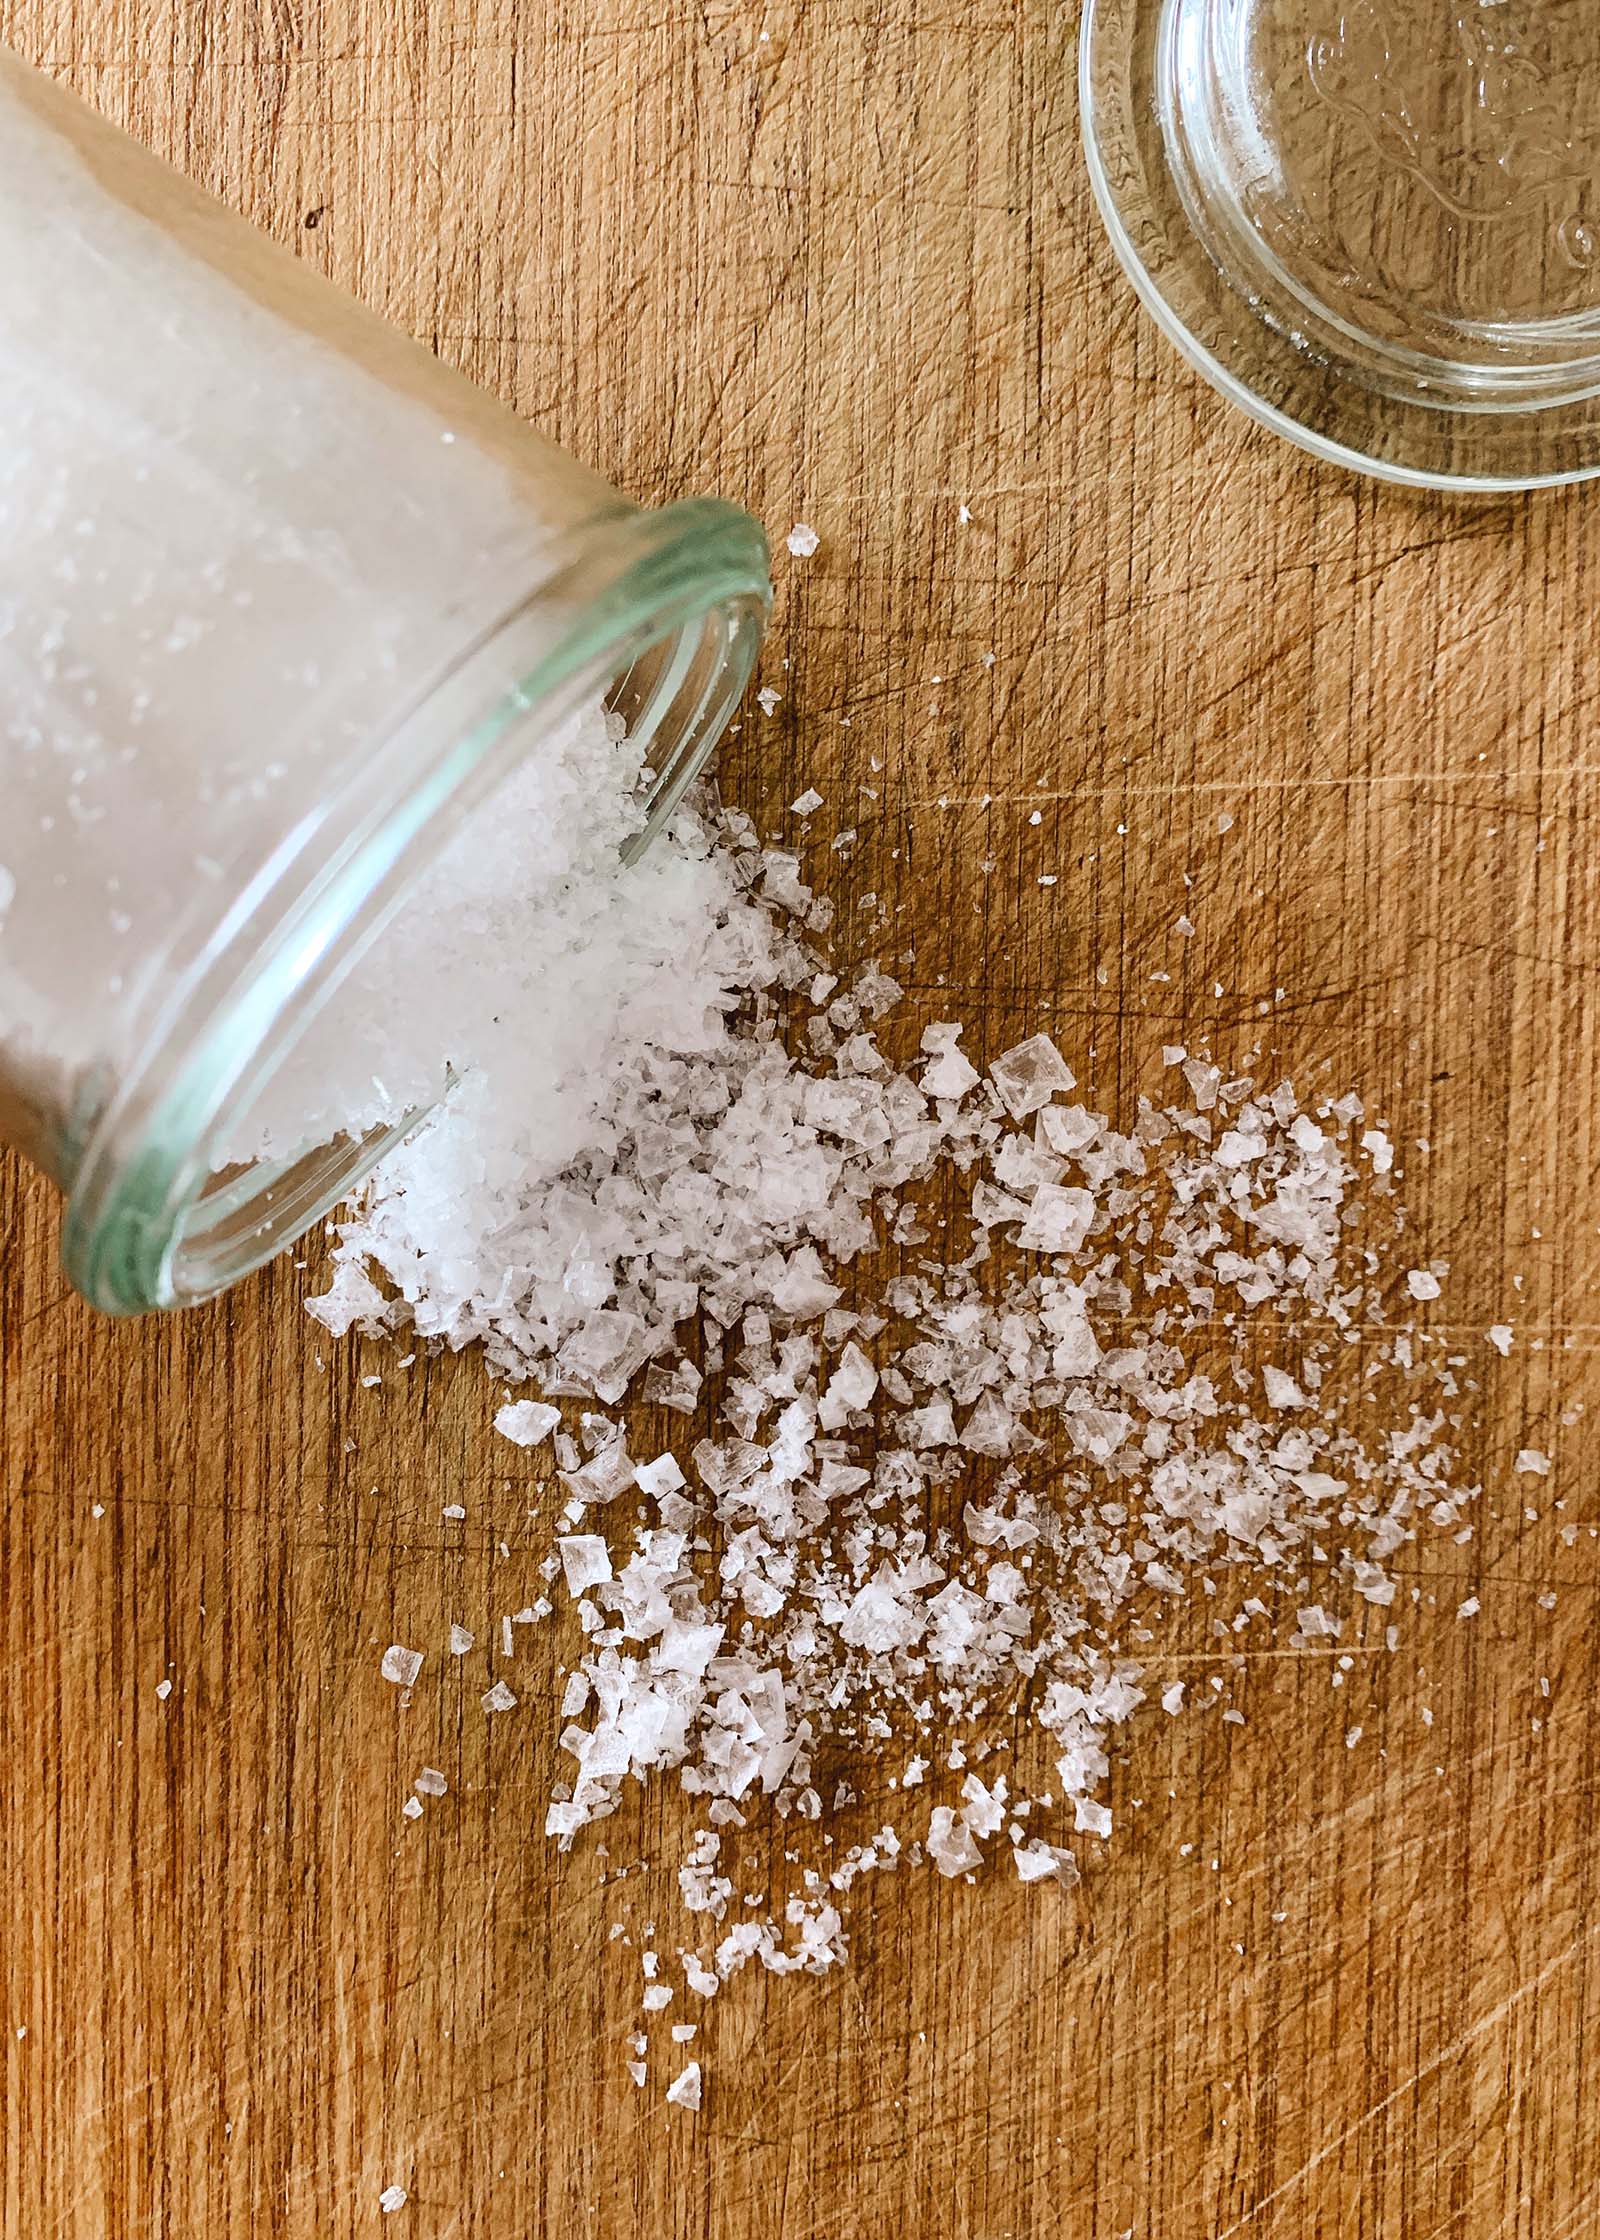  Что такое хлопья морской соли? Морская соль Малдона пролилась из банки на прилавок. 